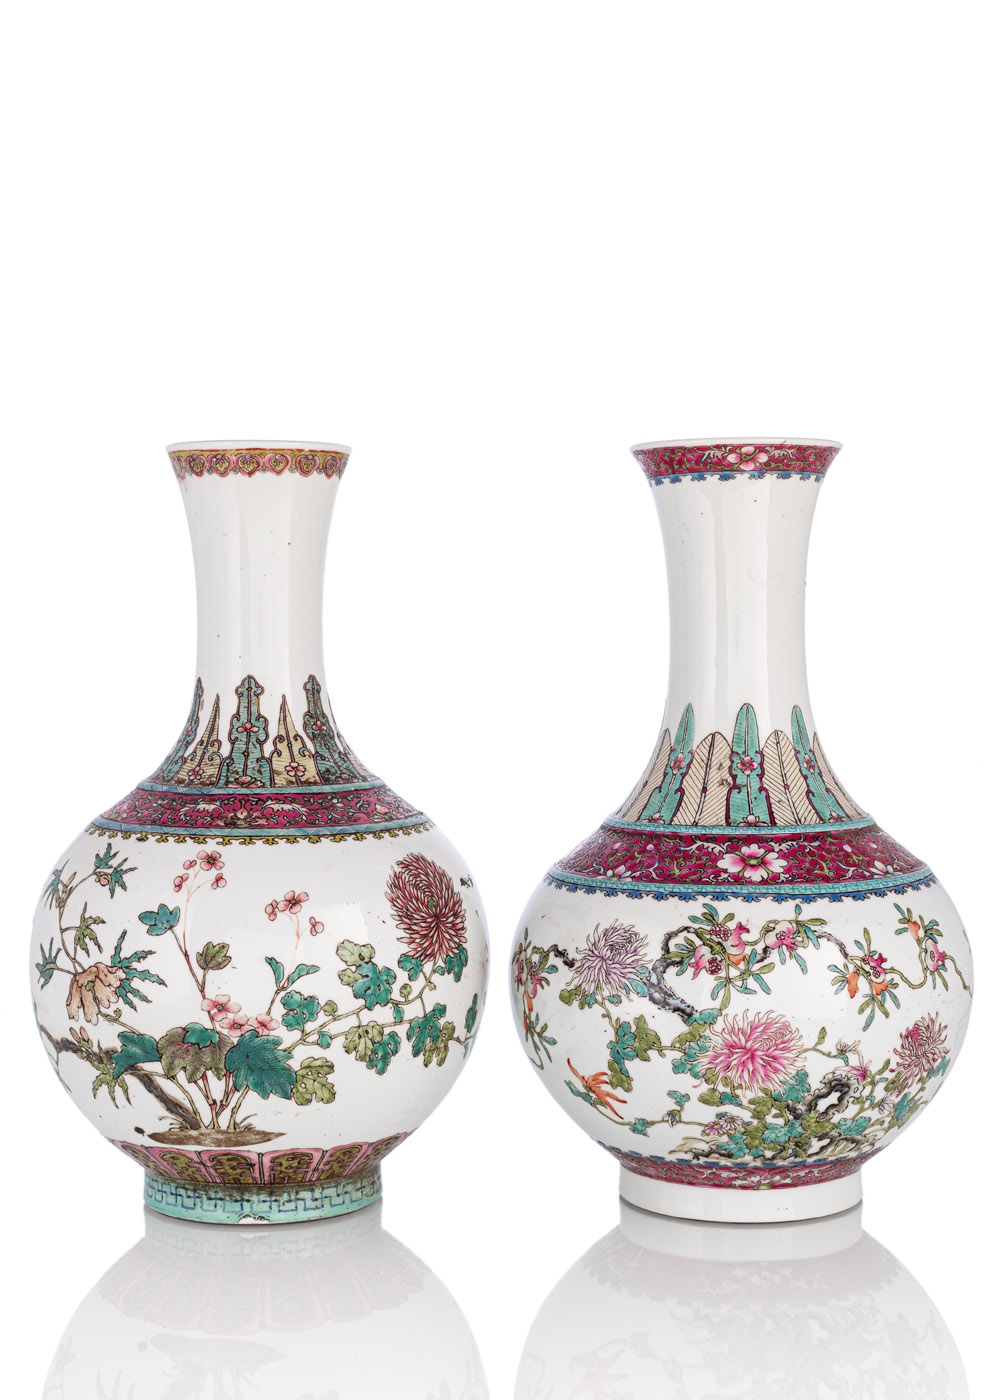 <b>Zwei Kugelvasen mit 'Famille rose'-Dekor von Granatäpfeln und Chrysanthemen</b>